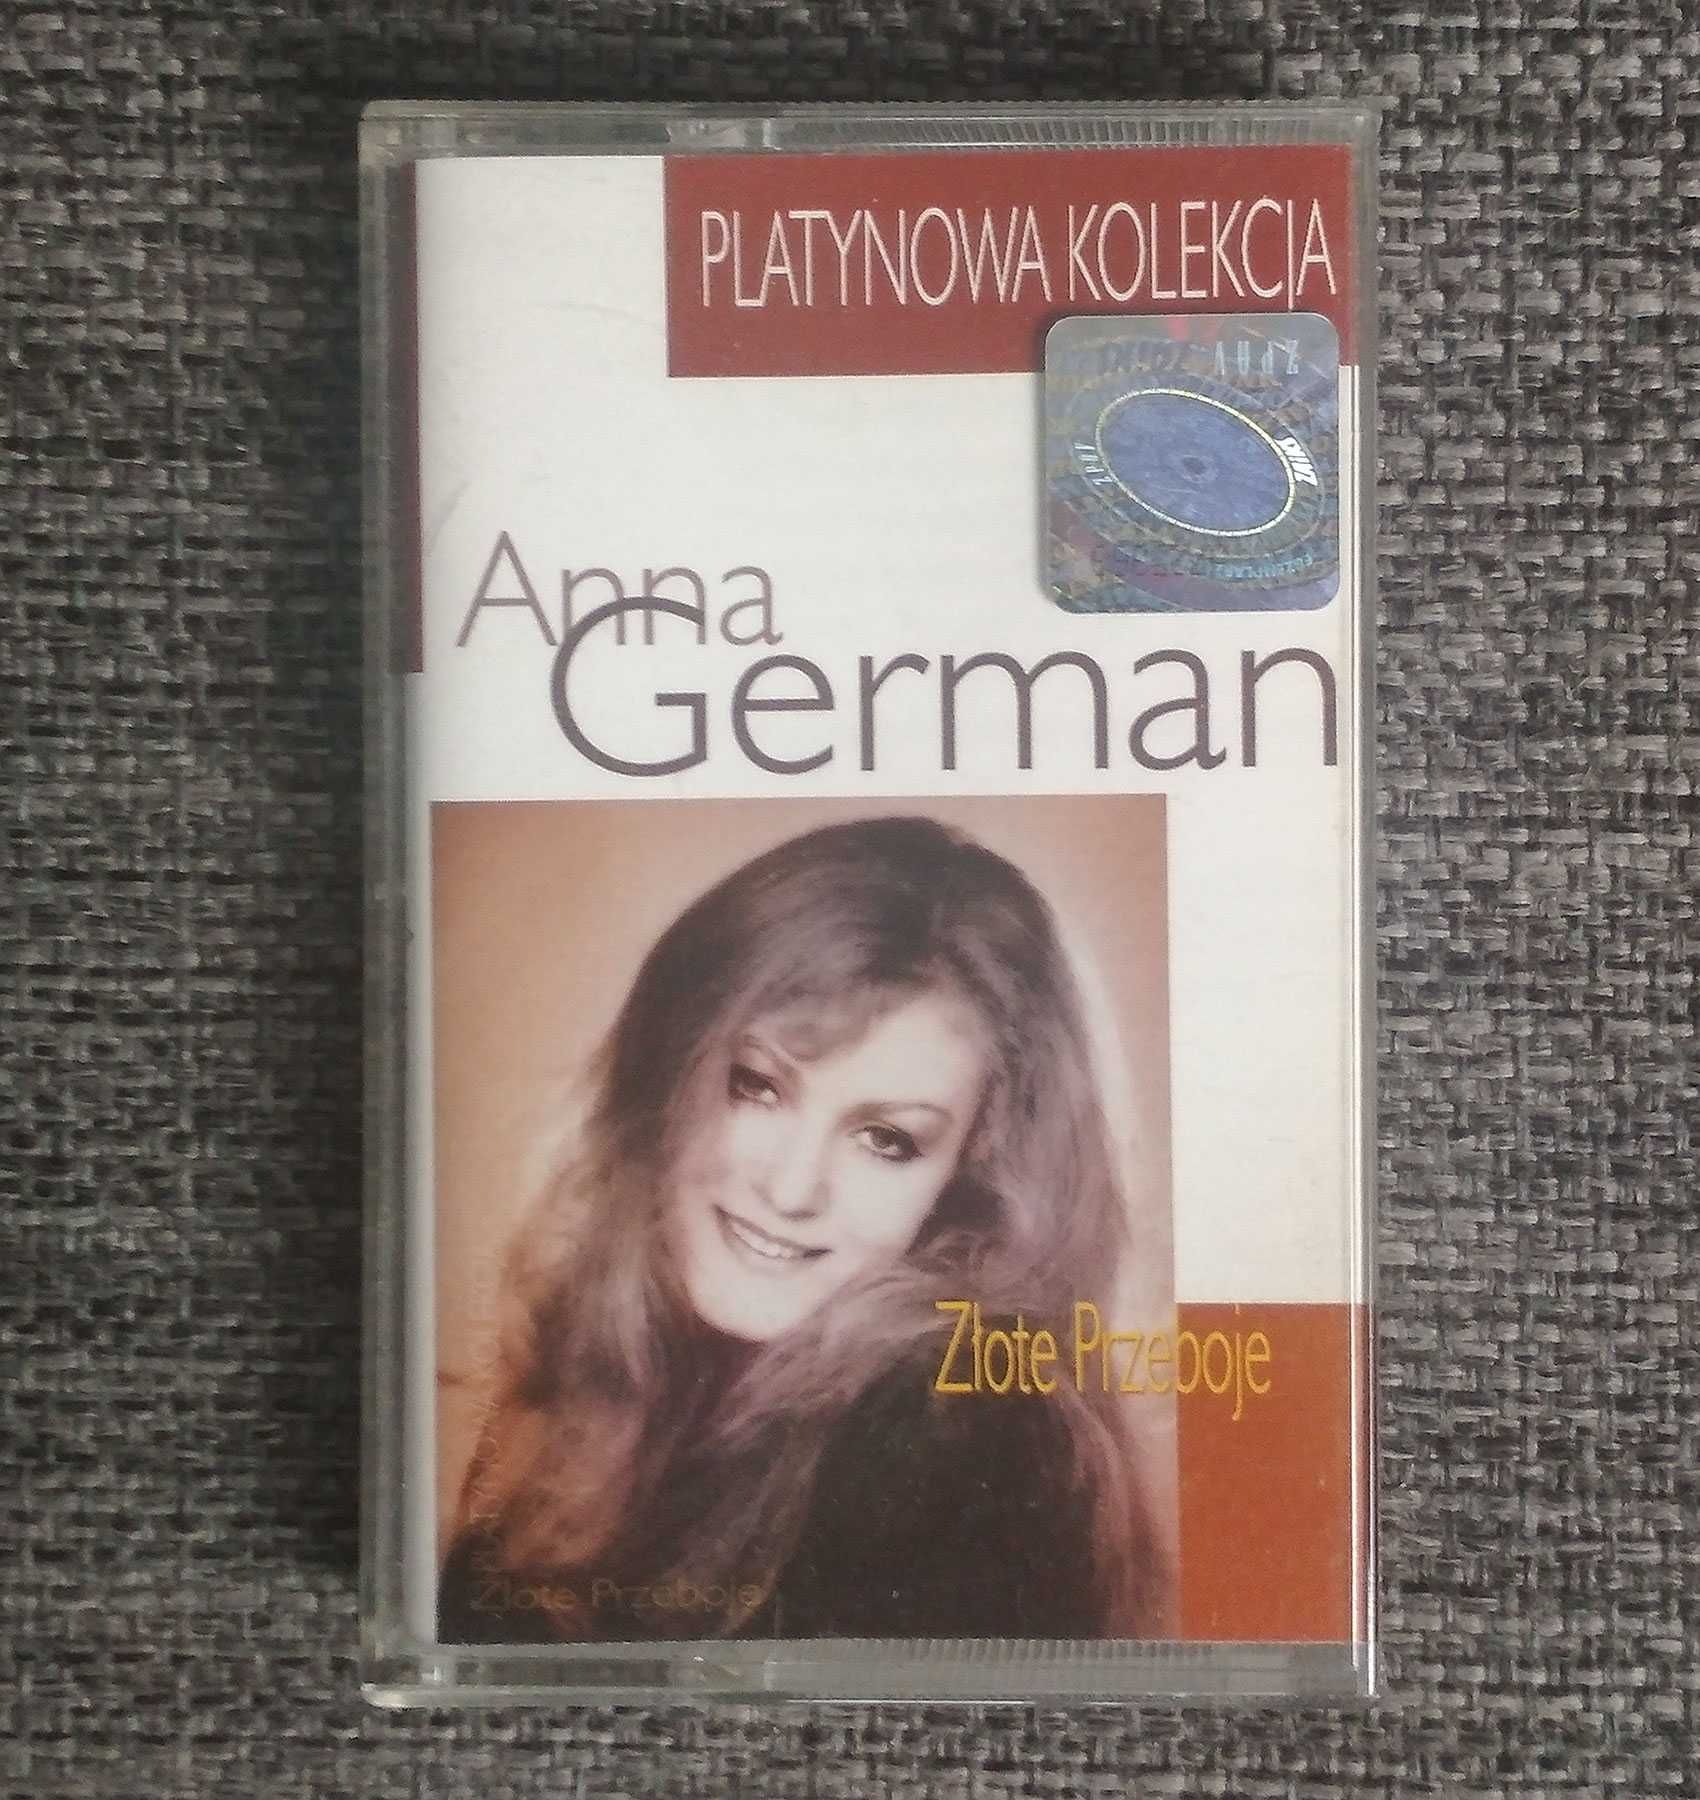 Anna German - Złote przeboje, Platynowa Kolekcja (defekt pudełka)